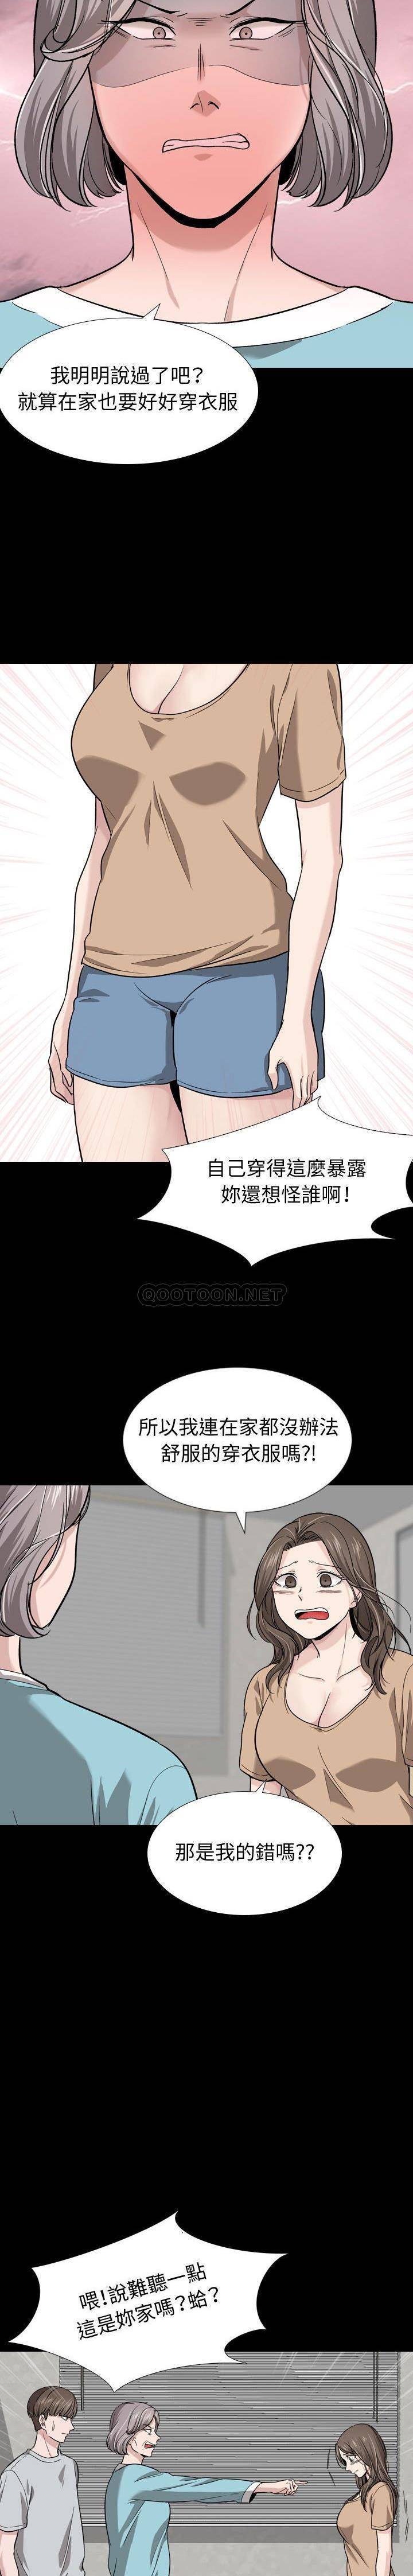 韩国污漫画 不單純友情 第15话 15